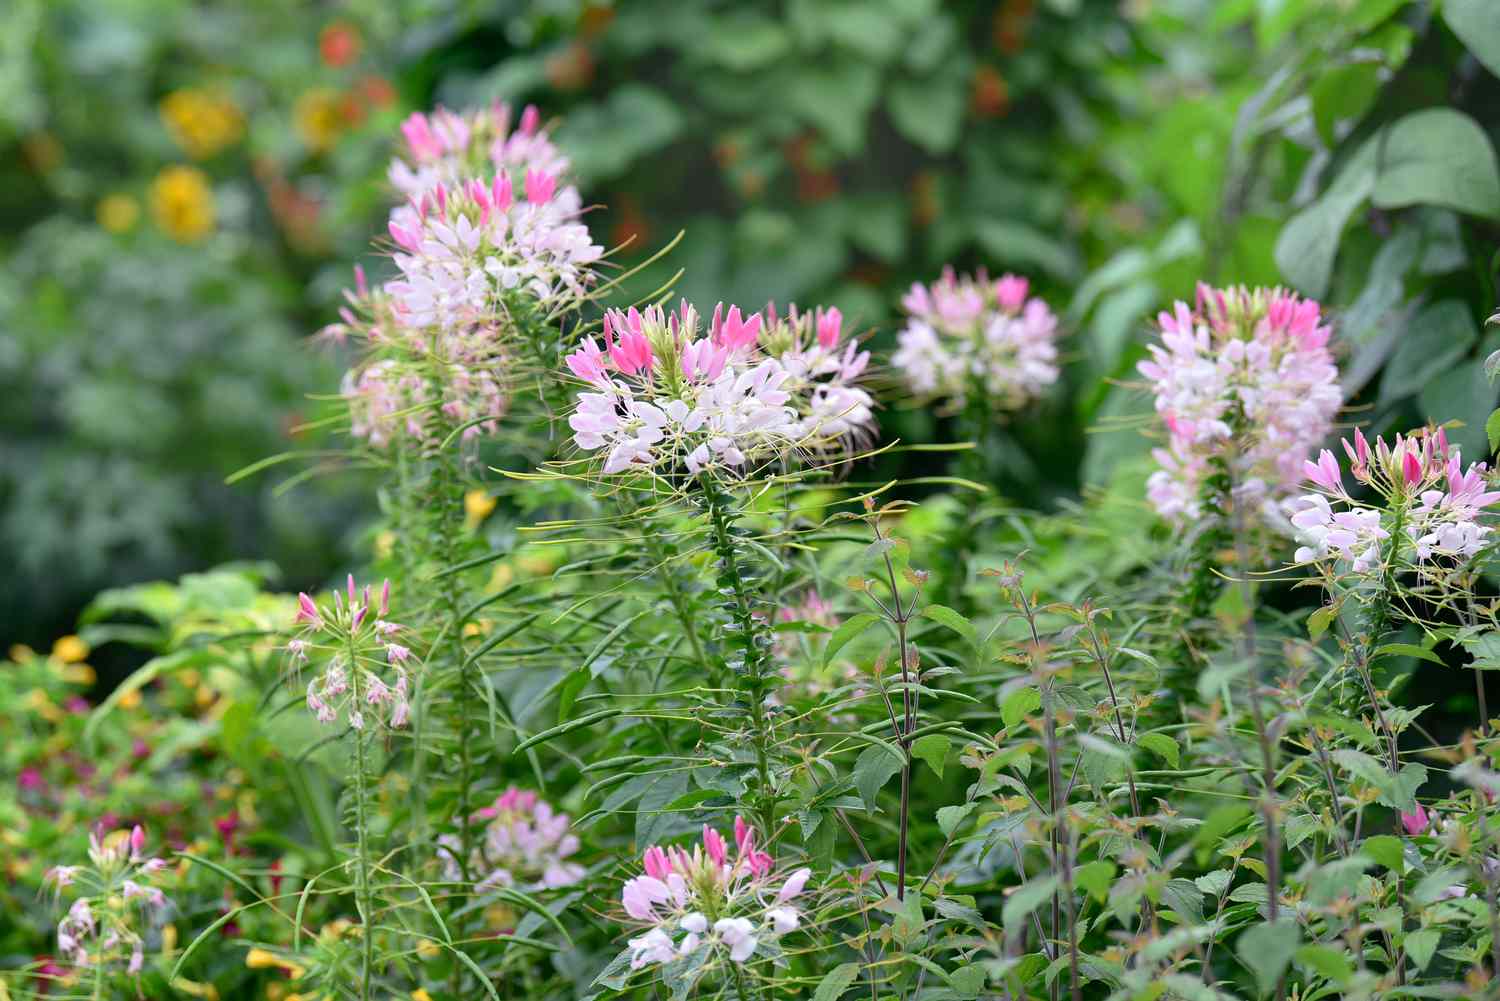 Cleome-Blüten auf dünnen, stacheligen Stängeln mit weißen Blütenbüscheln und rosa Blüten